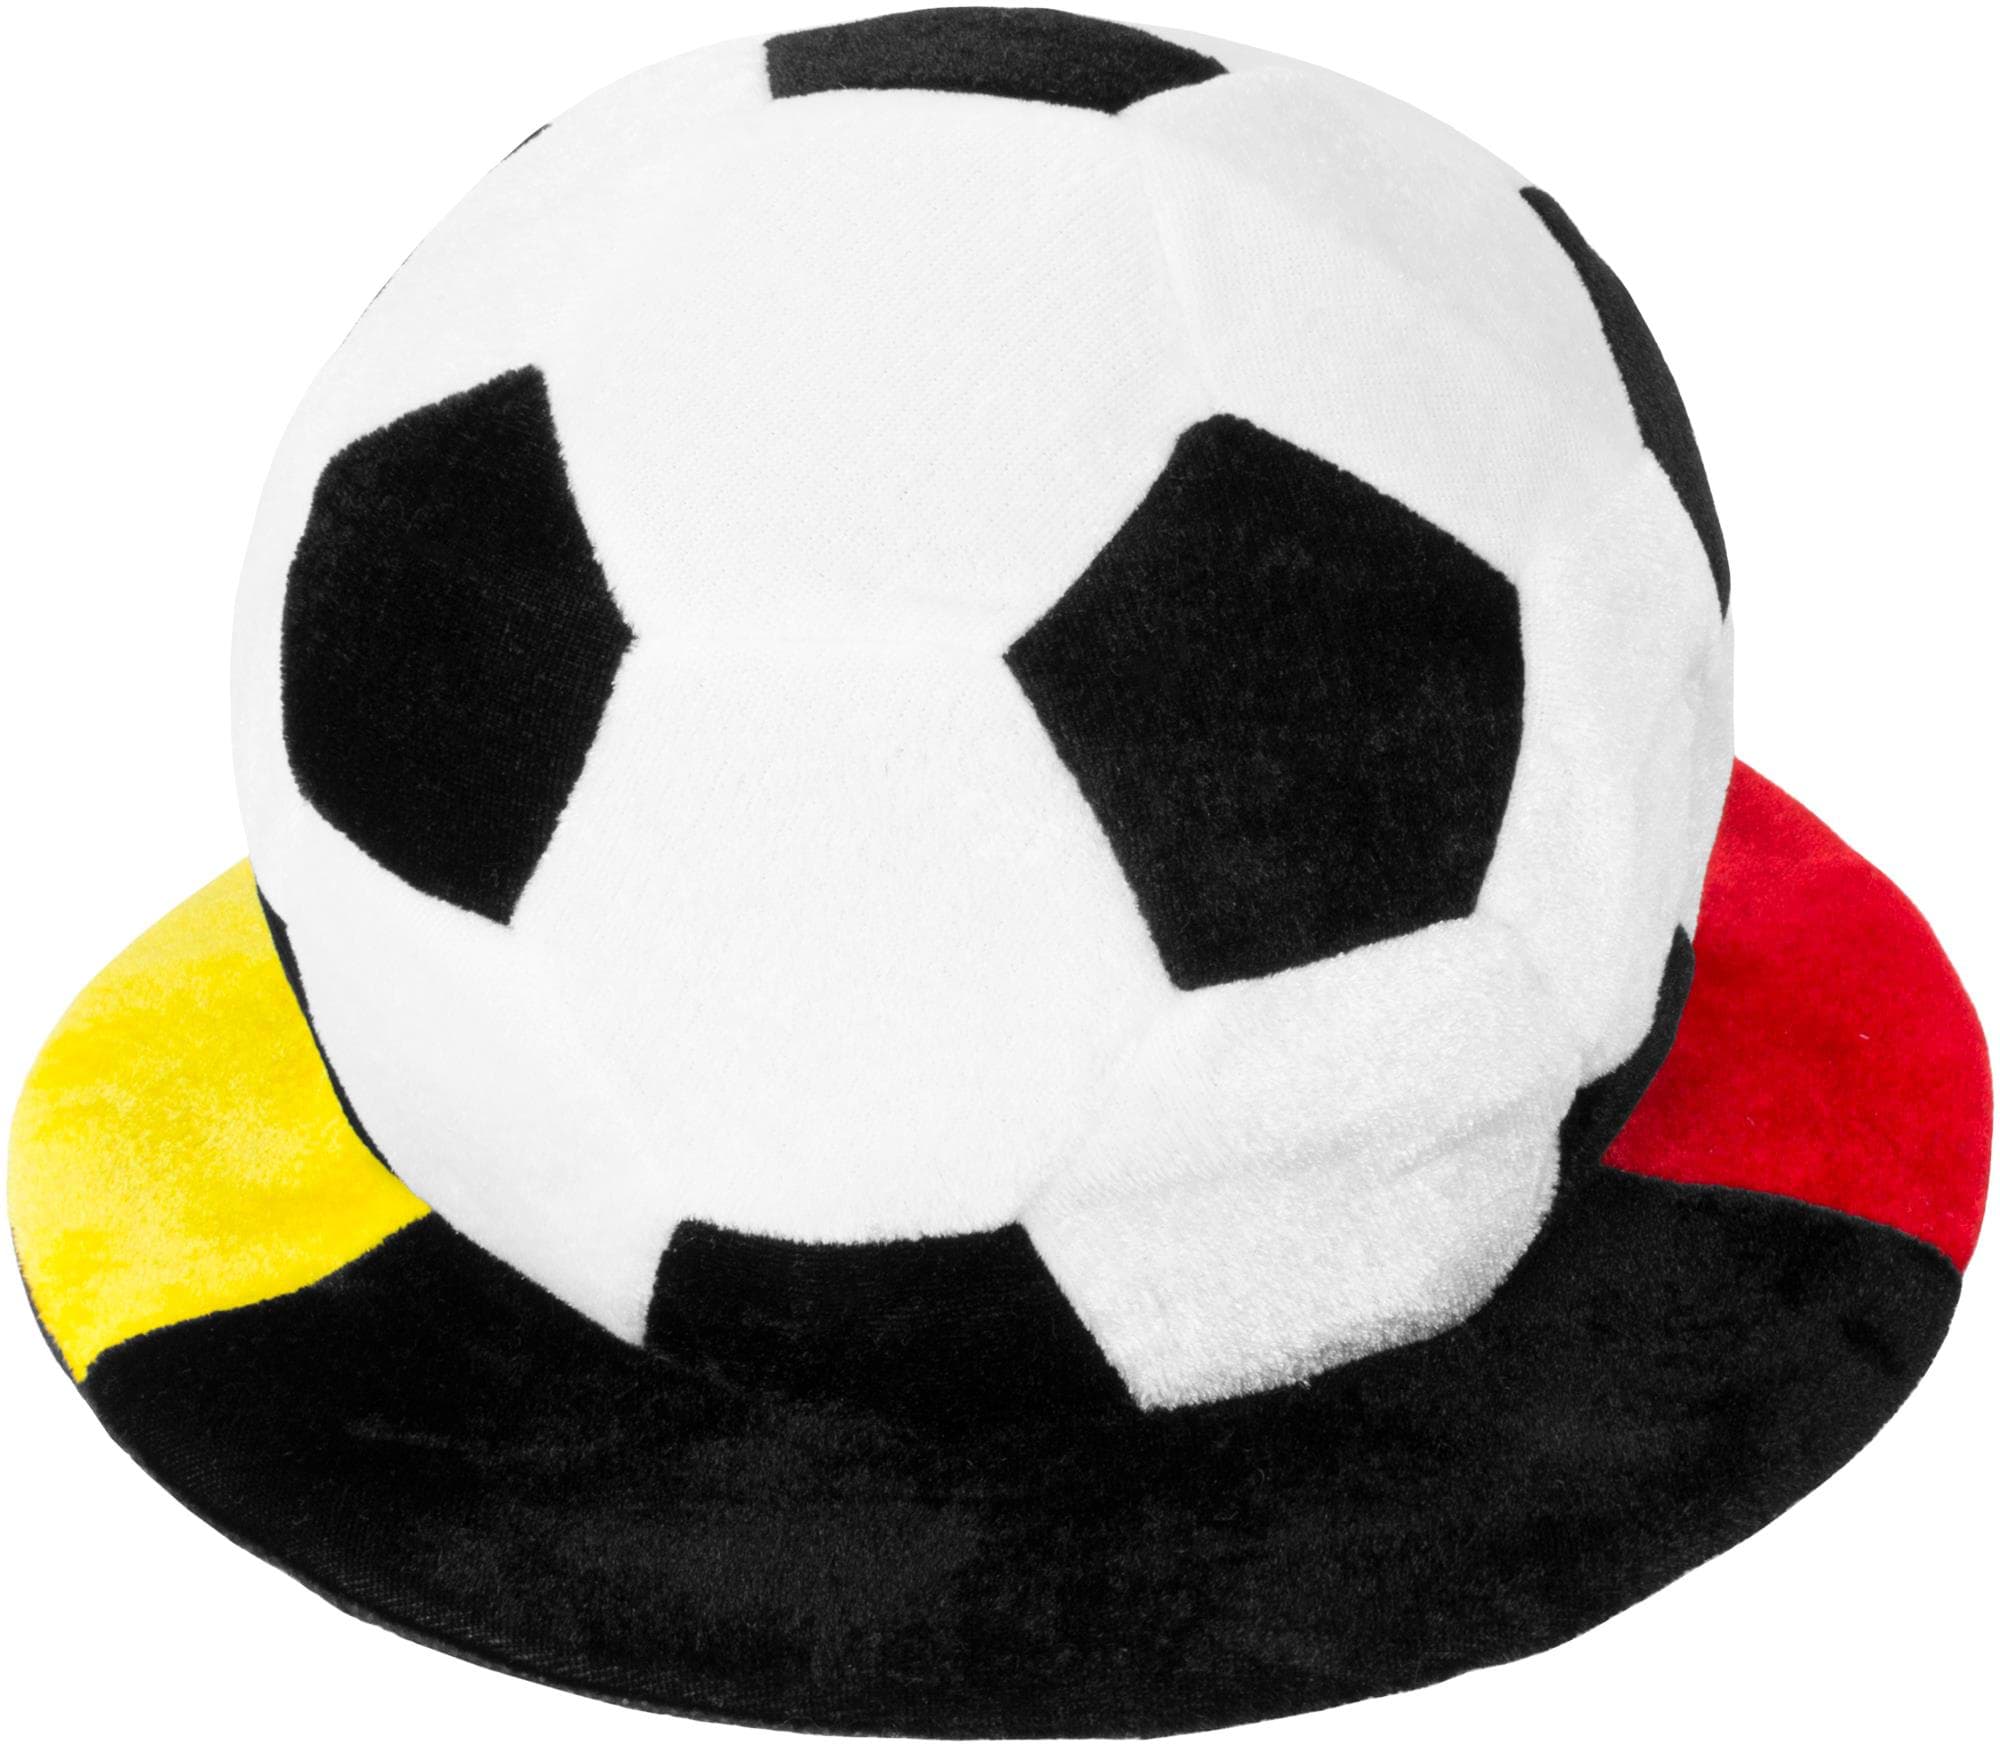 Bild von EM Fan-Arttikel Fleece Fanmütze in Fußballoptik Schwarz/Rot/Gelb